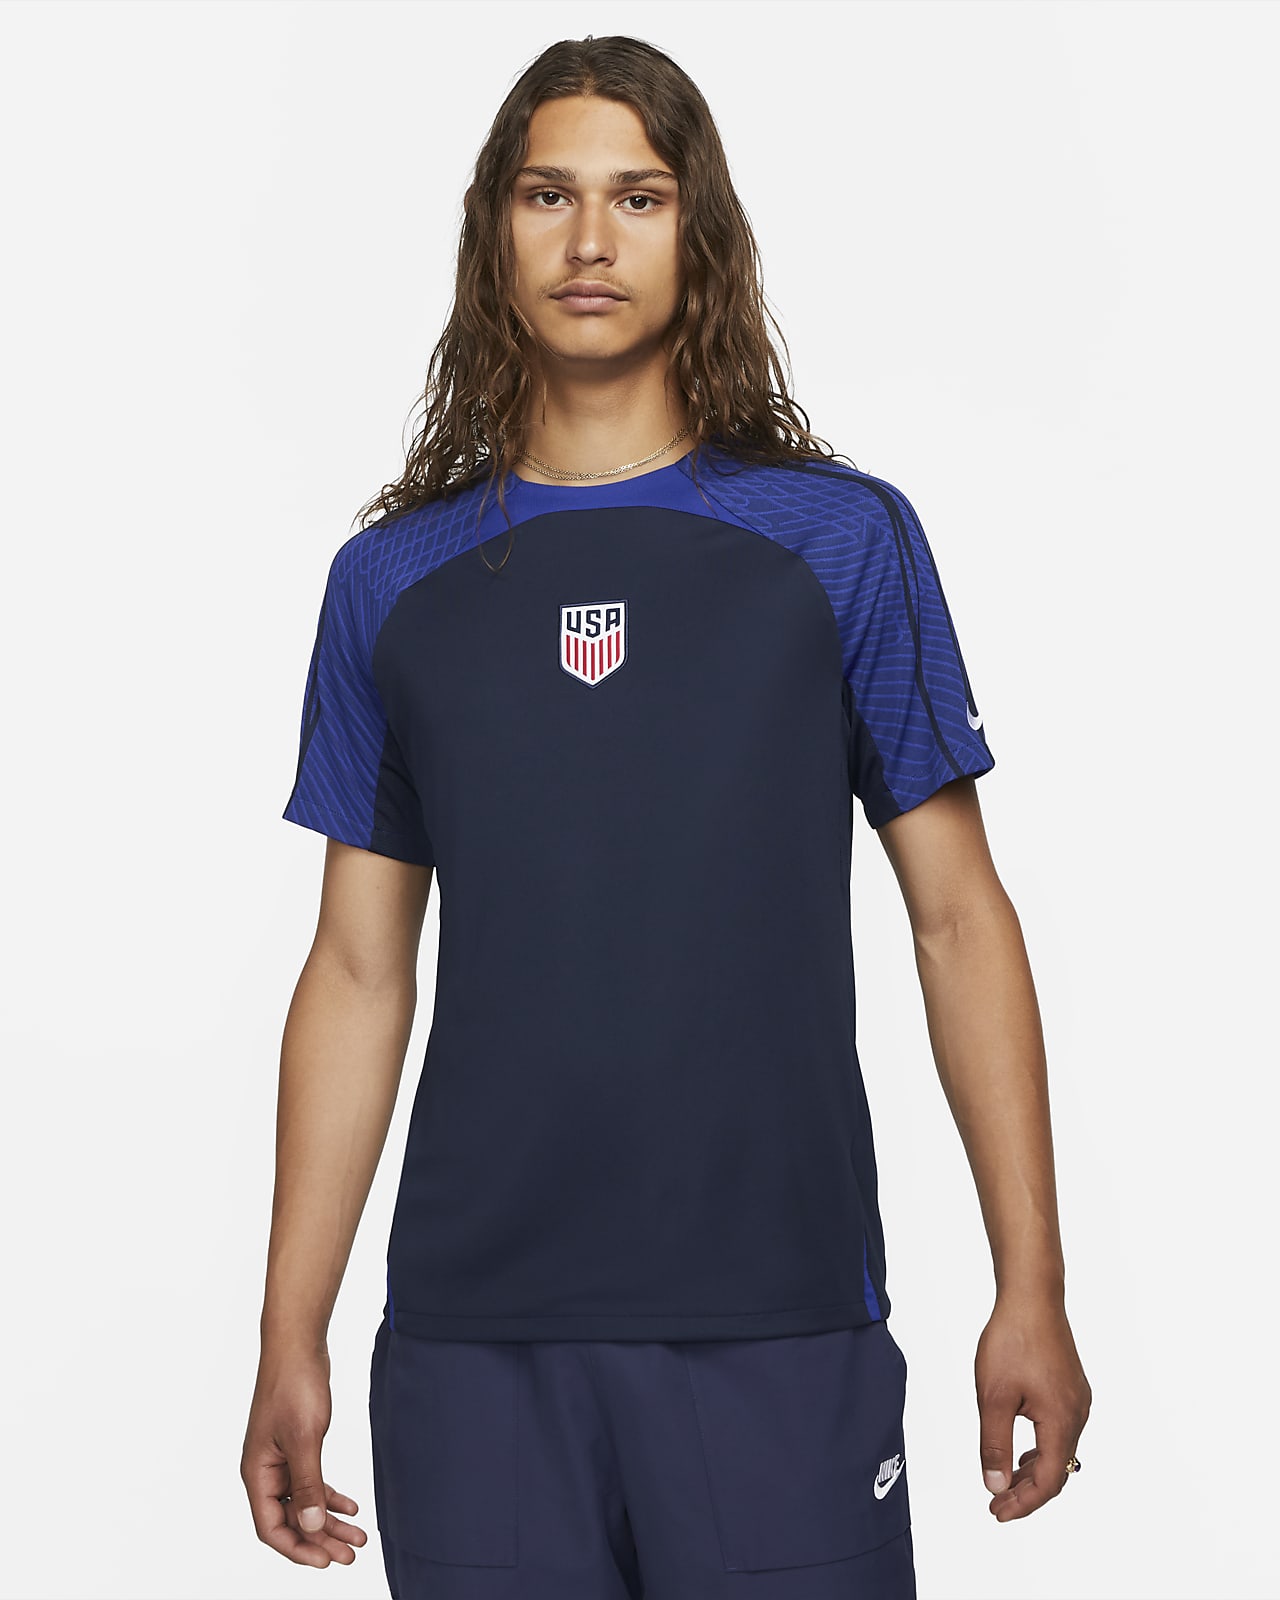 Men's Nike Short-Sleeve Soccer Top. Nike.com